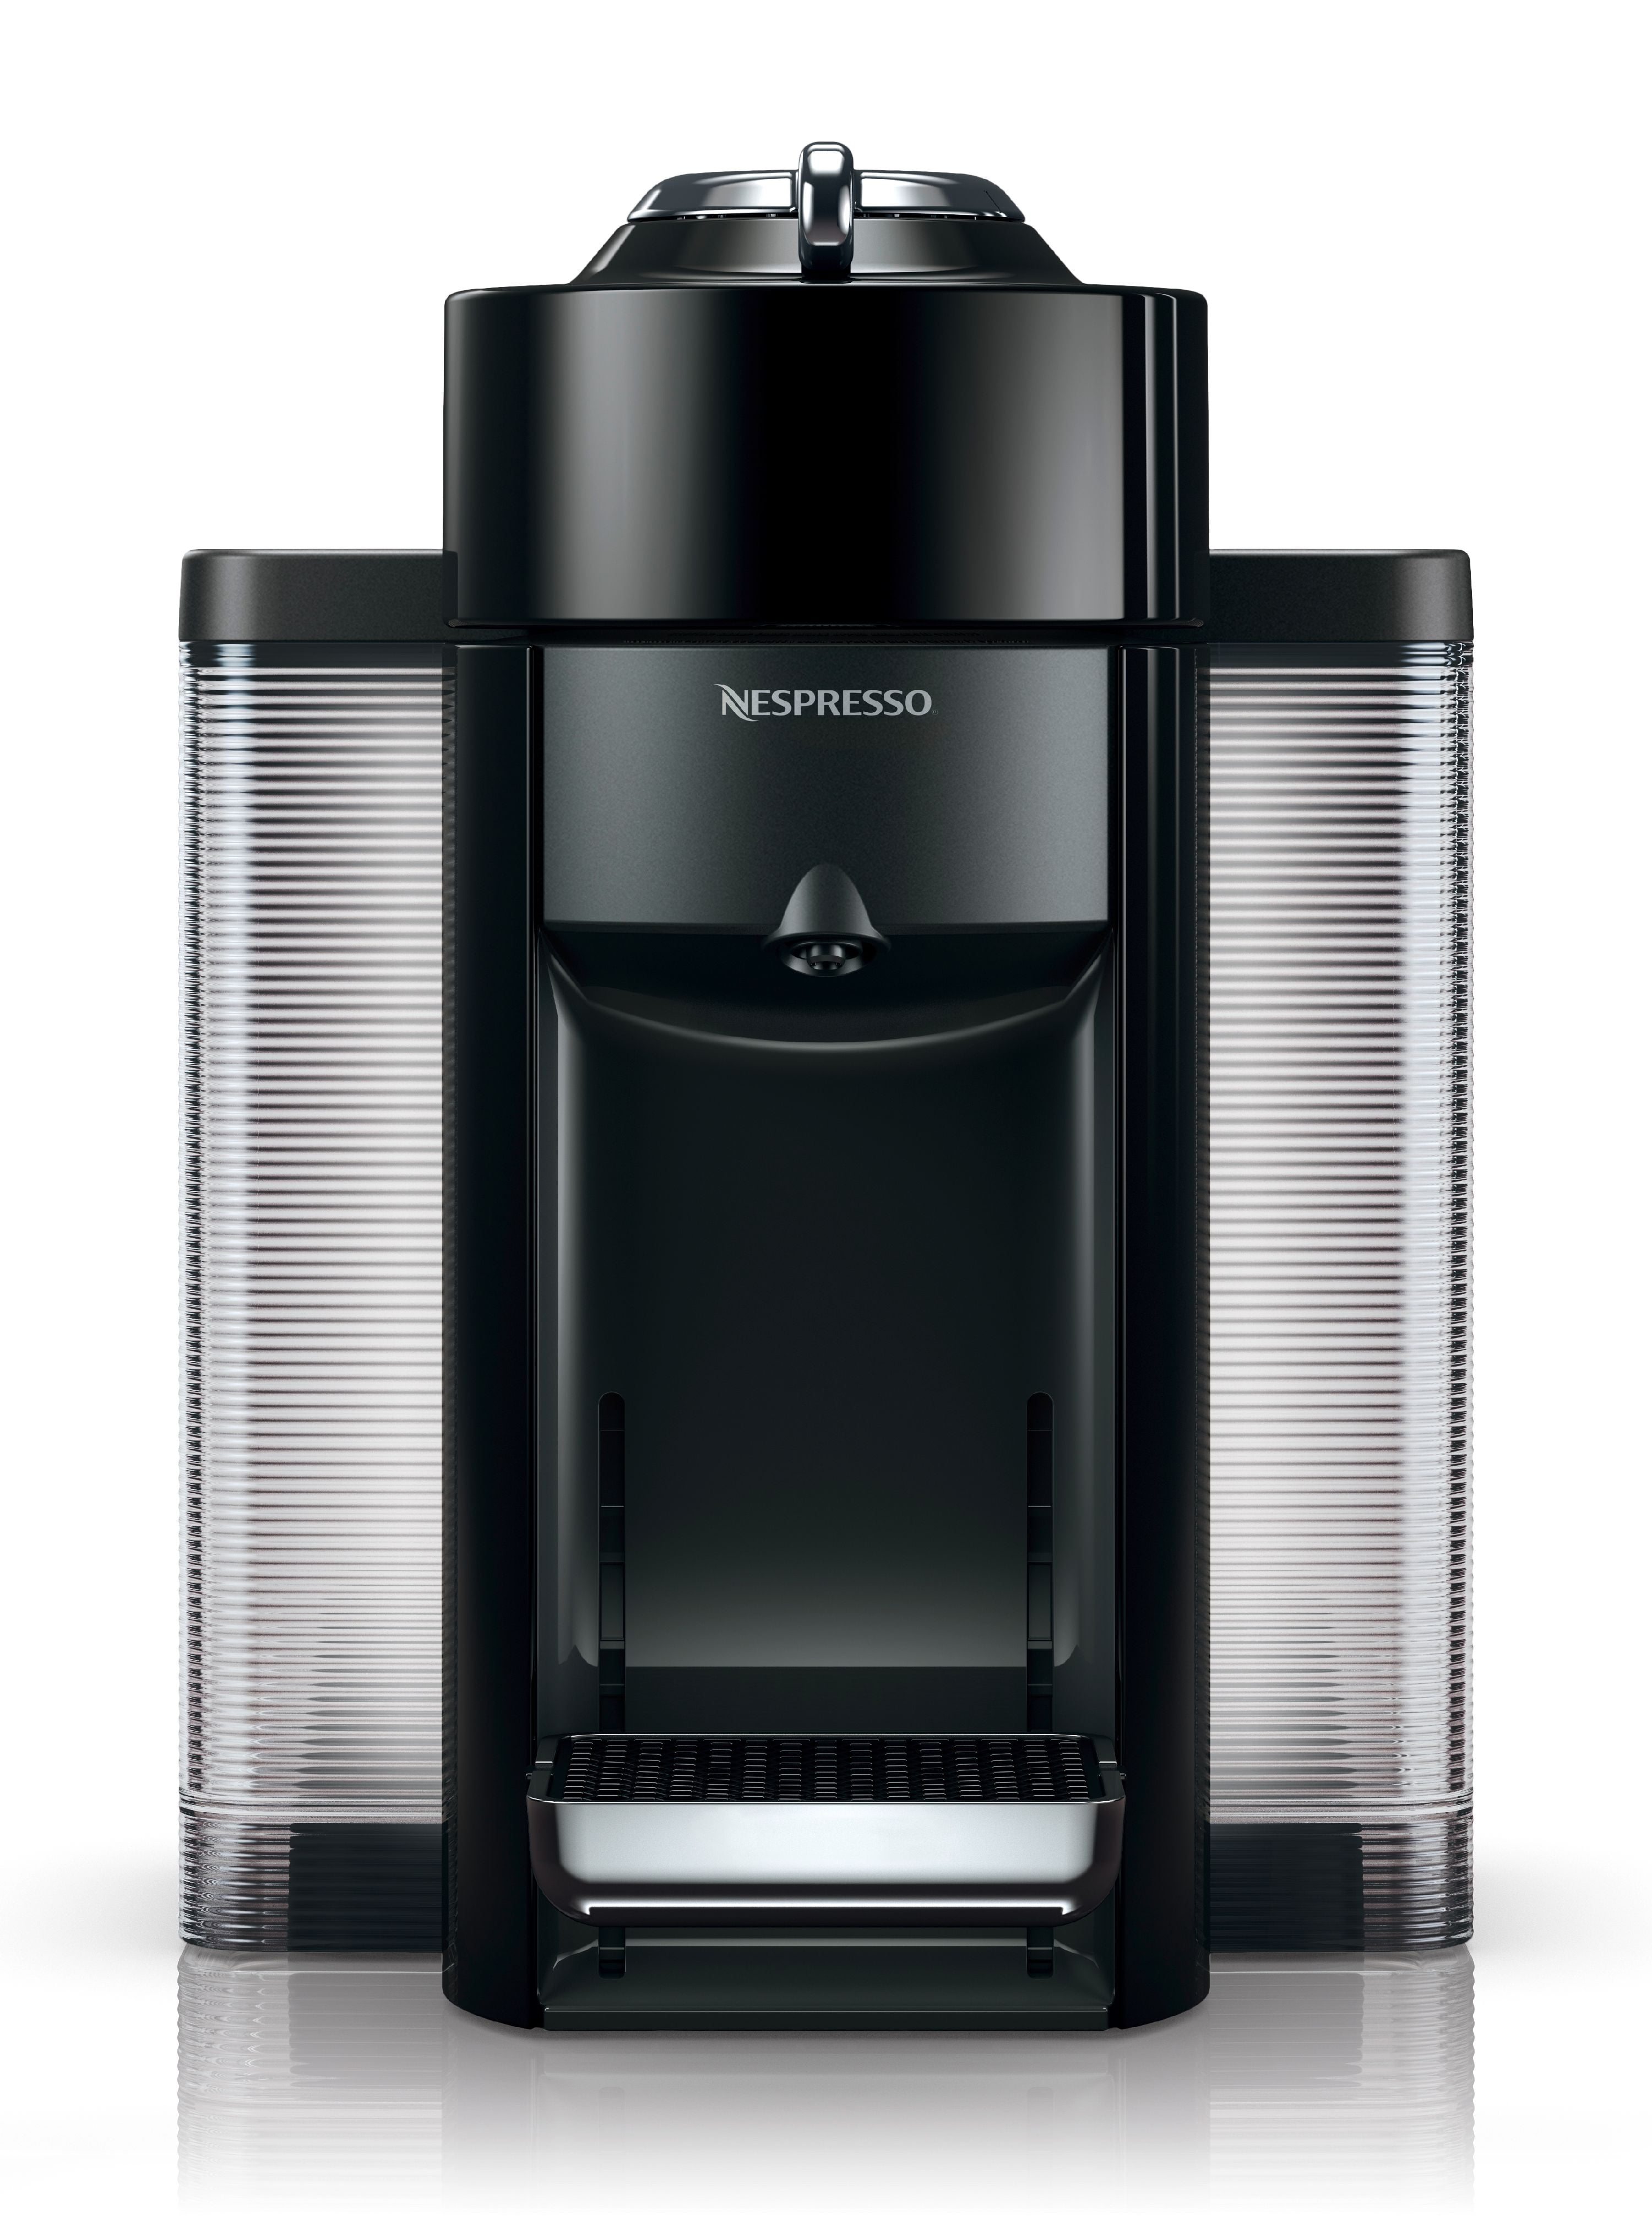 Nespresso Vertuo Coffee and Espresso Machine by De'Longhi, Black, New 